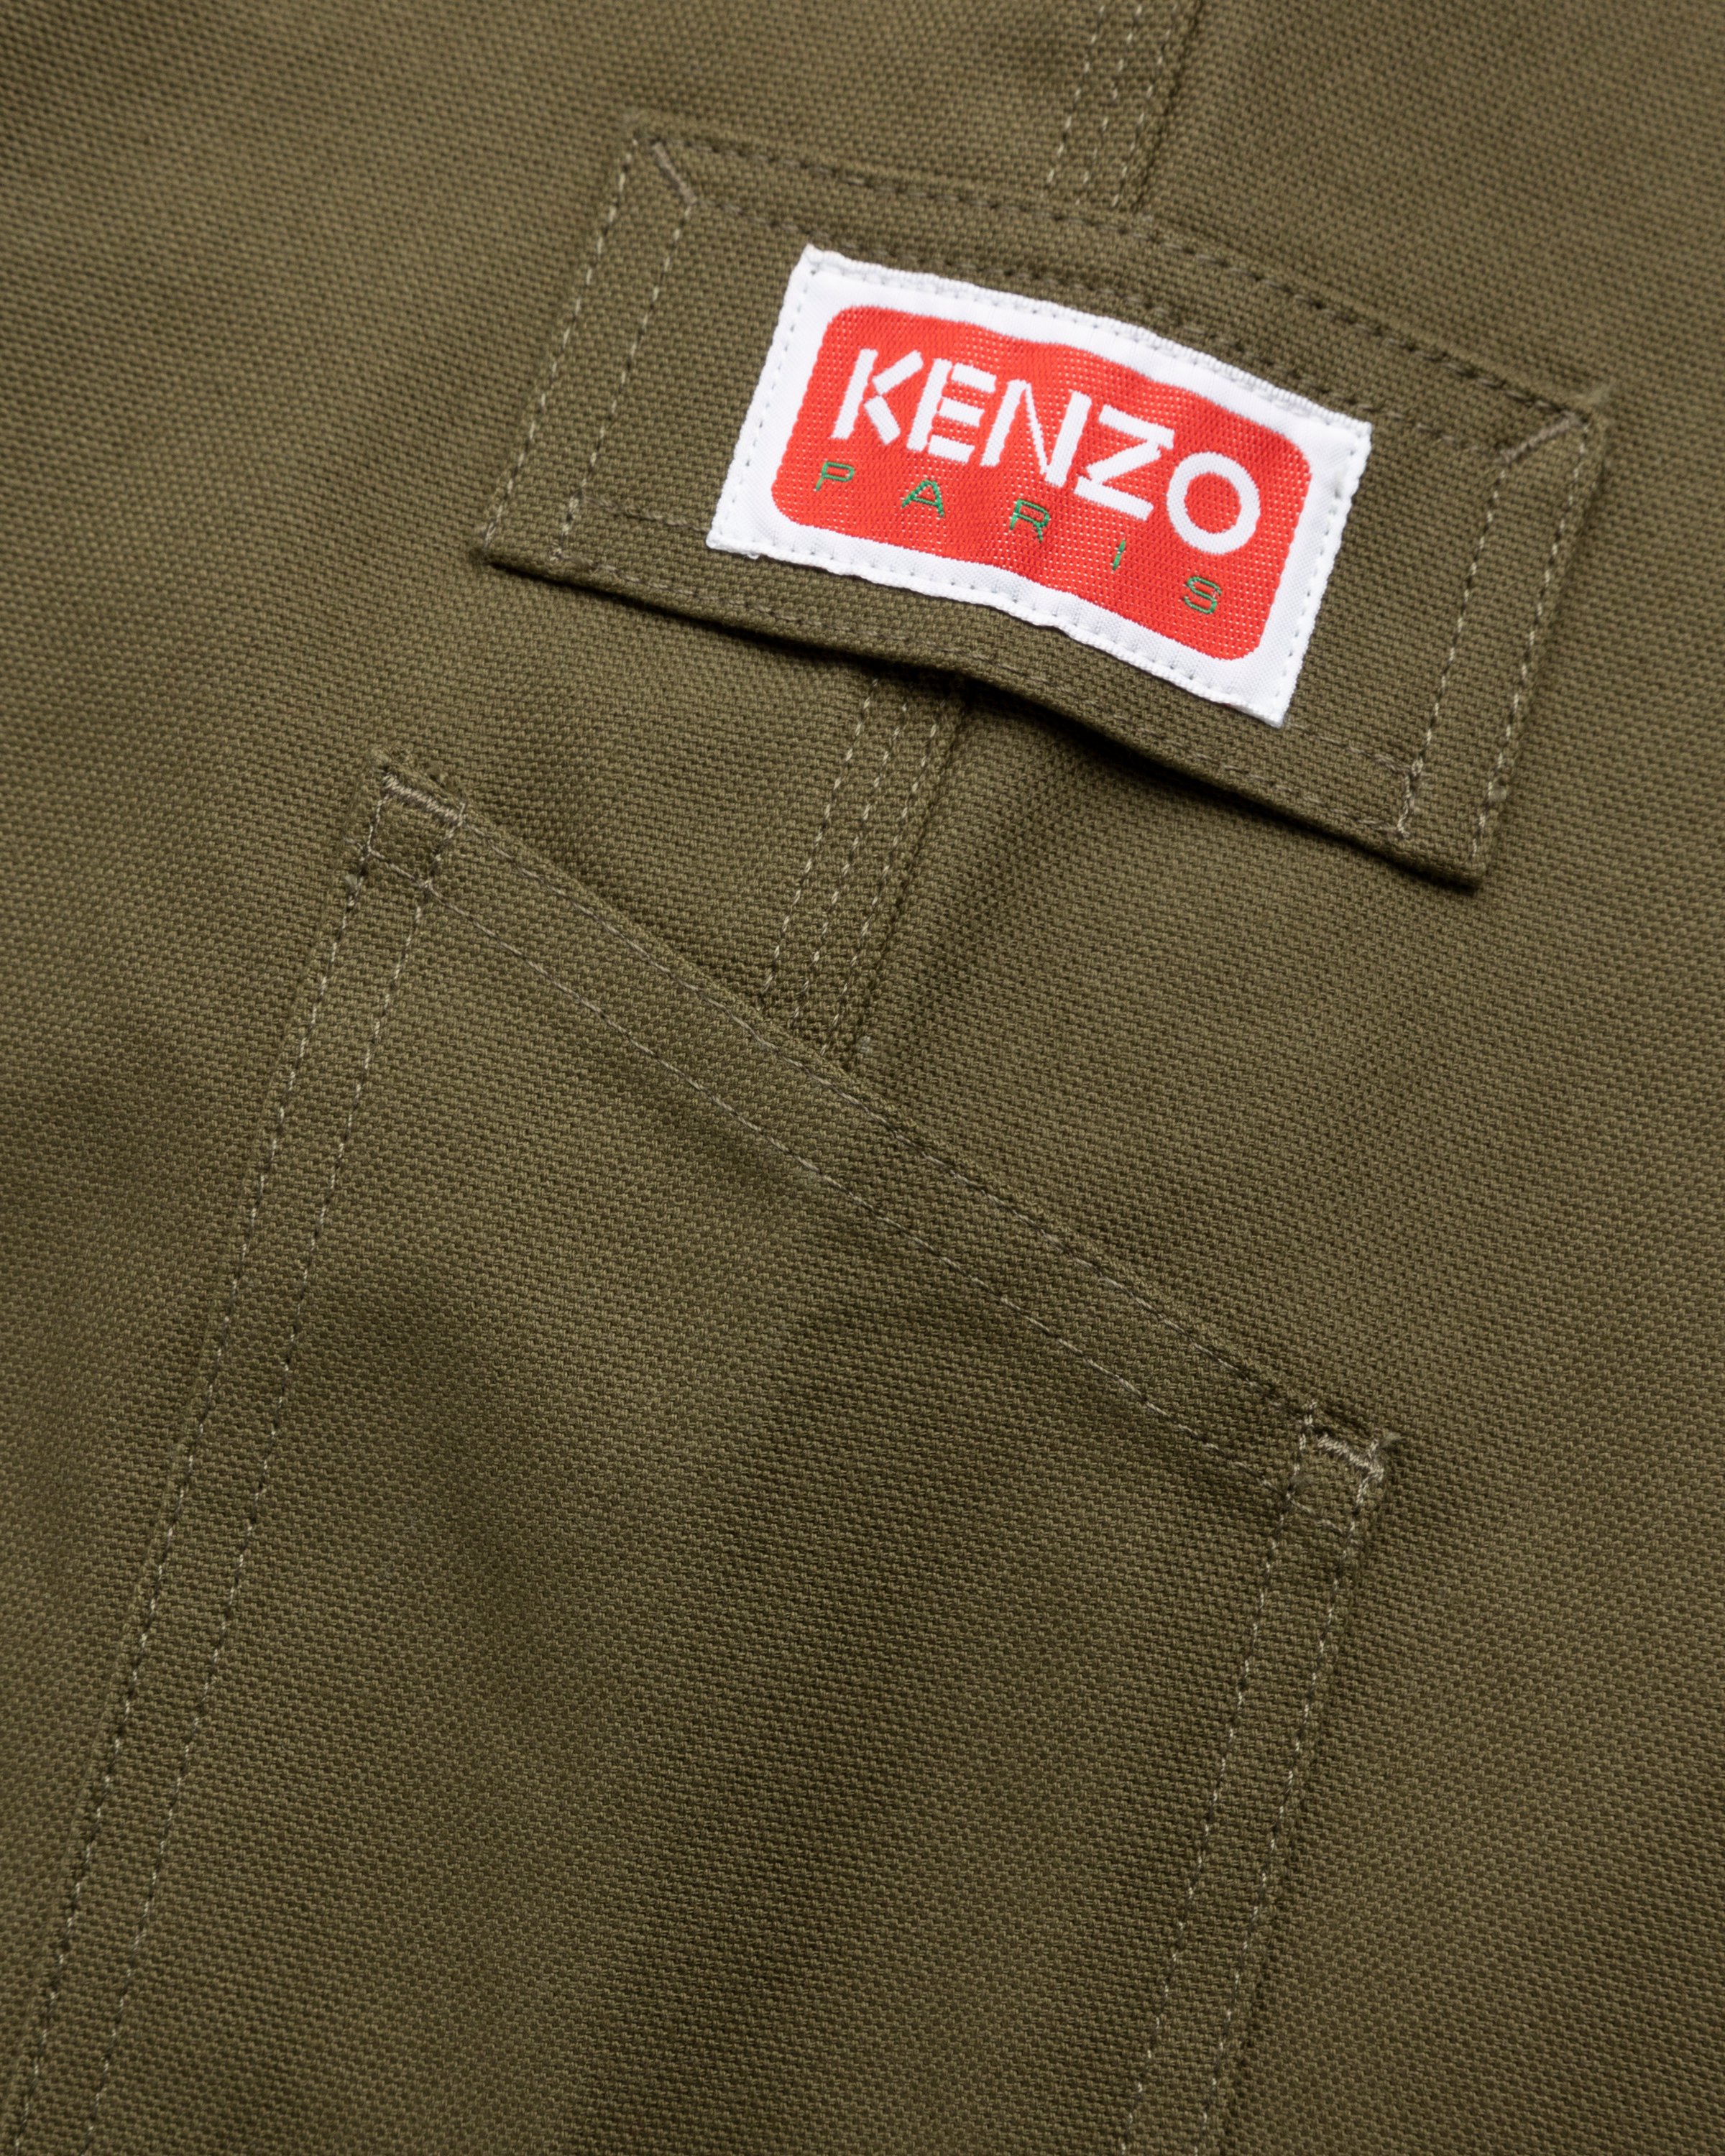 Kenzo - Carpenter Pants Dark Khaki - Clothing - Green - Image 6